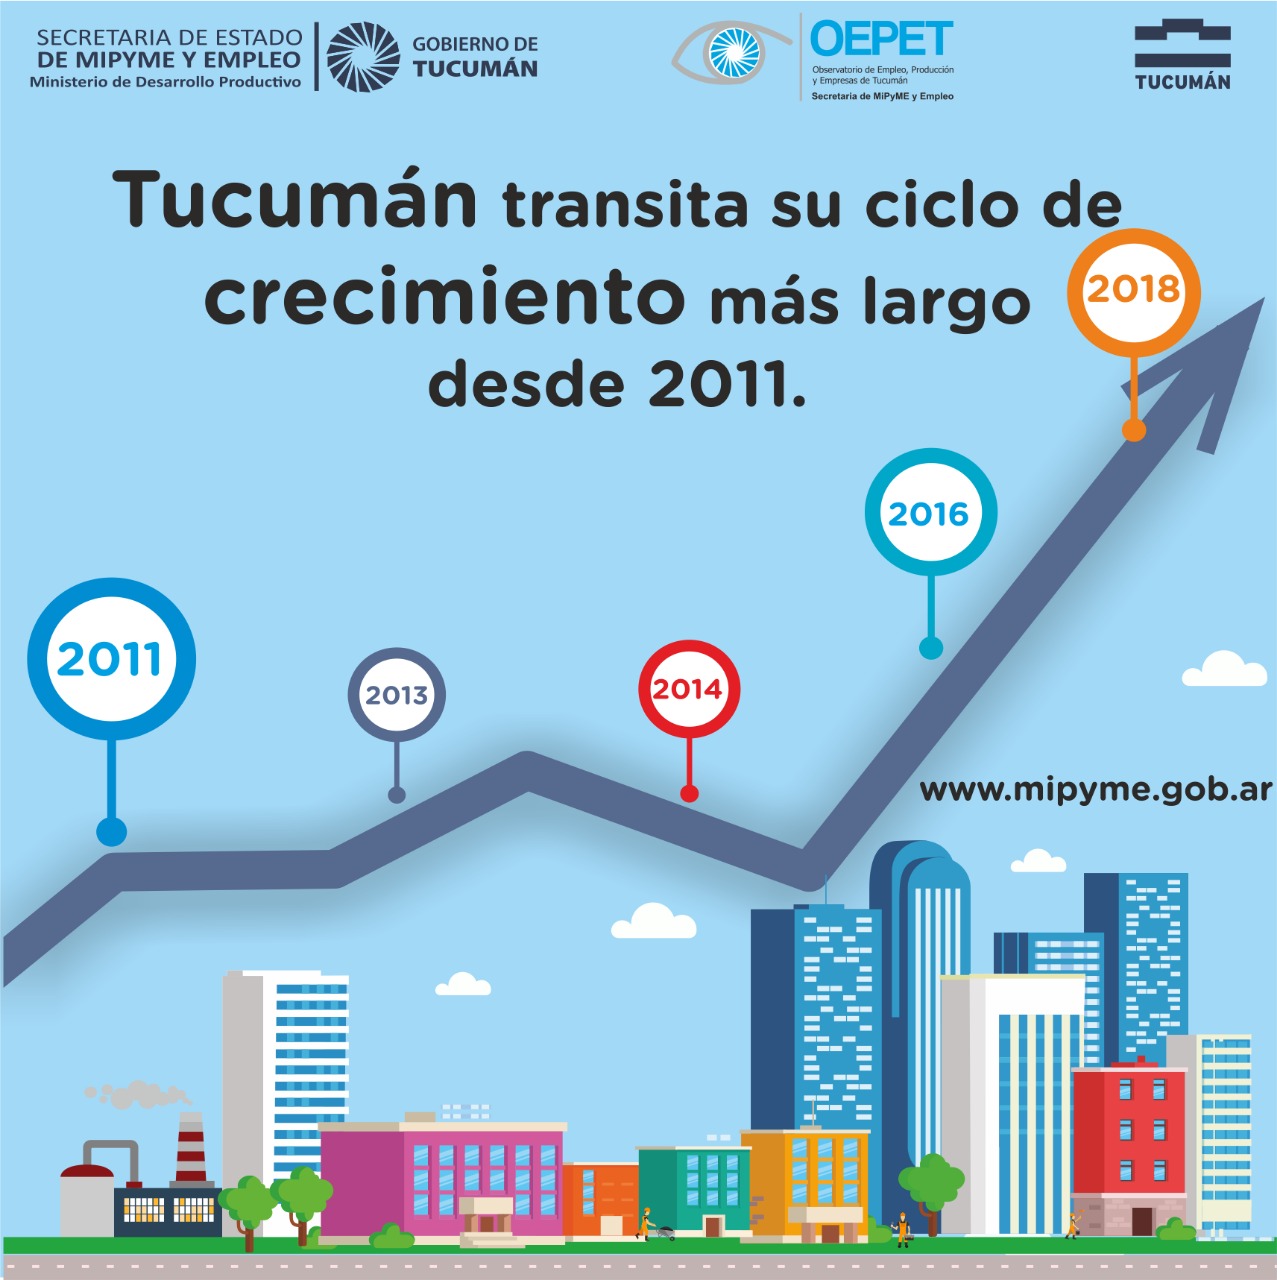 Tucumán transita su ciclo de crecimiento más largo desde 2011